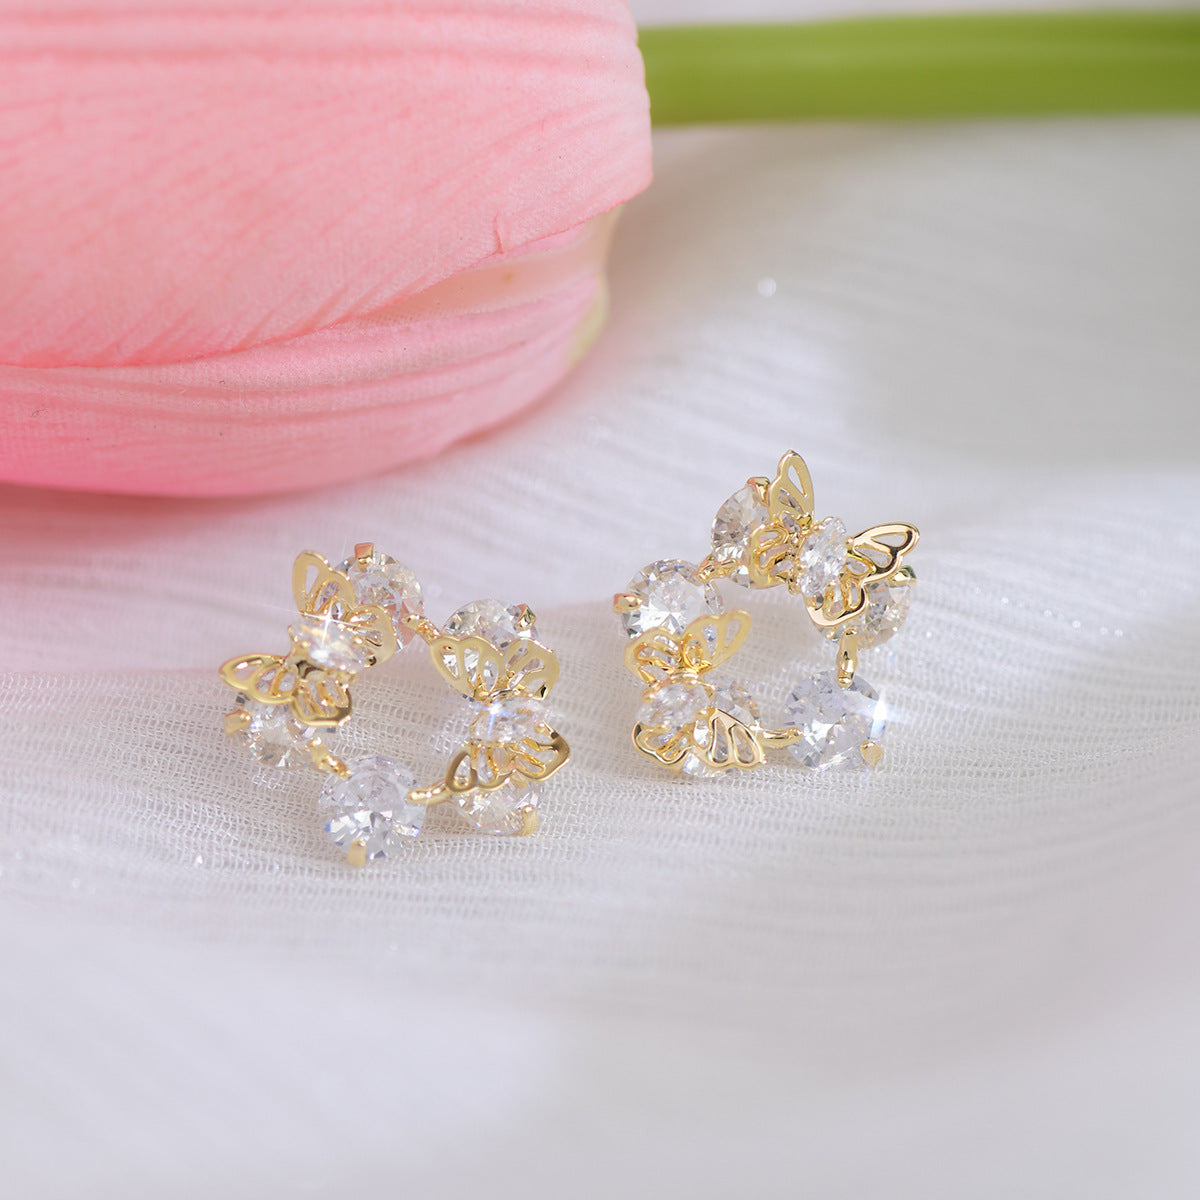 Butterfly Dream Earrings